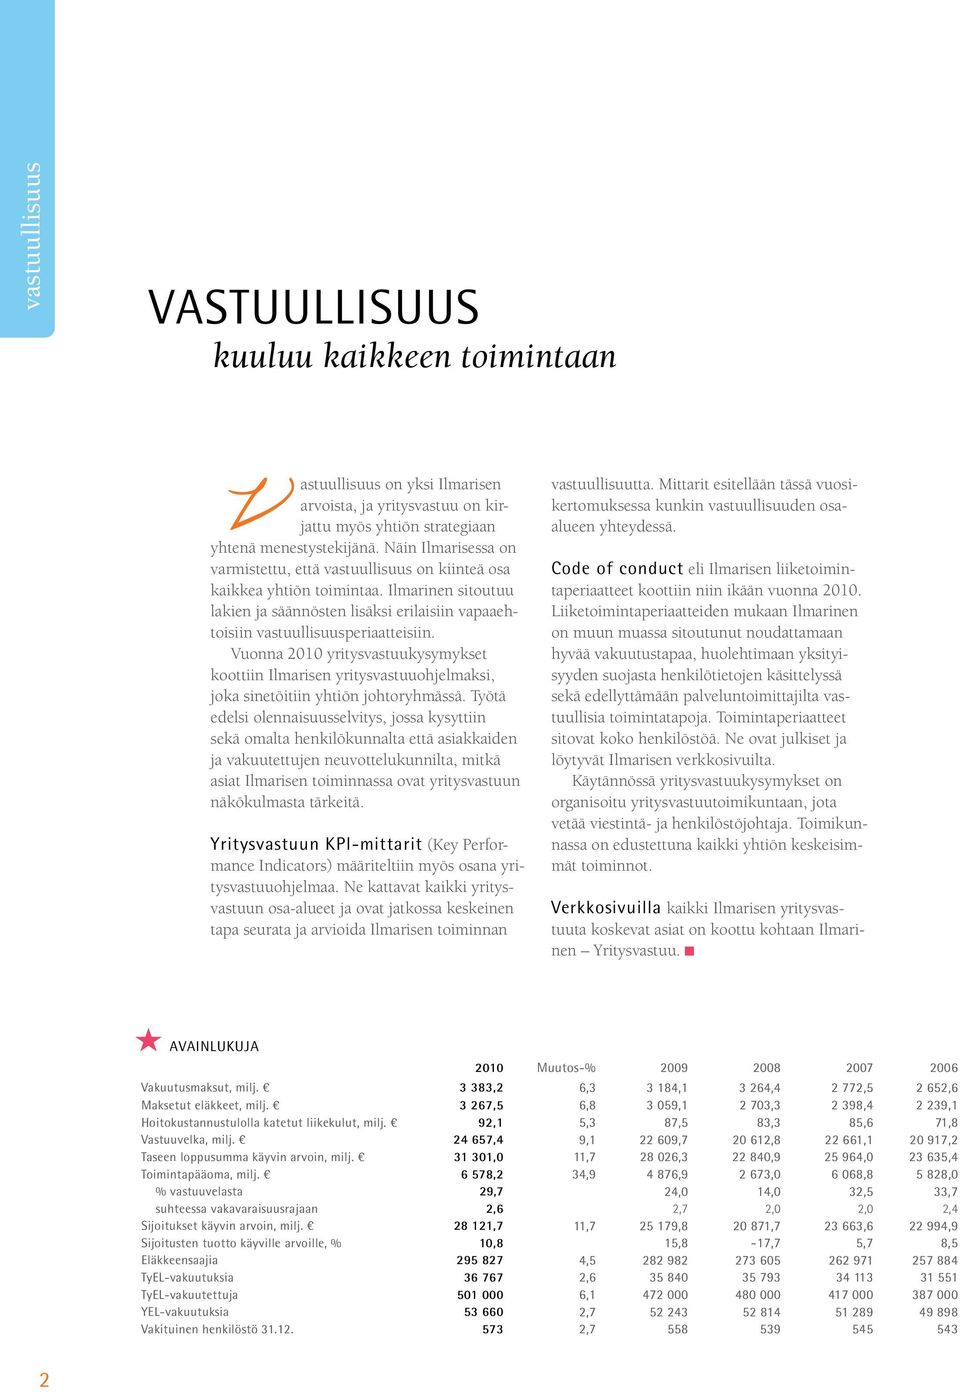 Vuonna 2010 yritysvastuukysymykset koottiin Ilmarisen yritysvastuuohjelmaksi, joka sinetöitiin yhtiön johtoryhmässä.